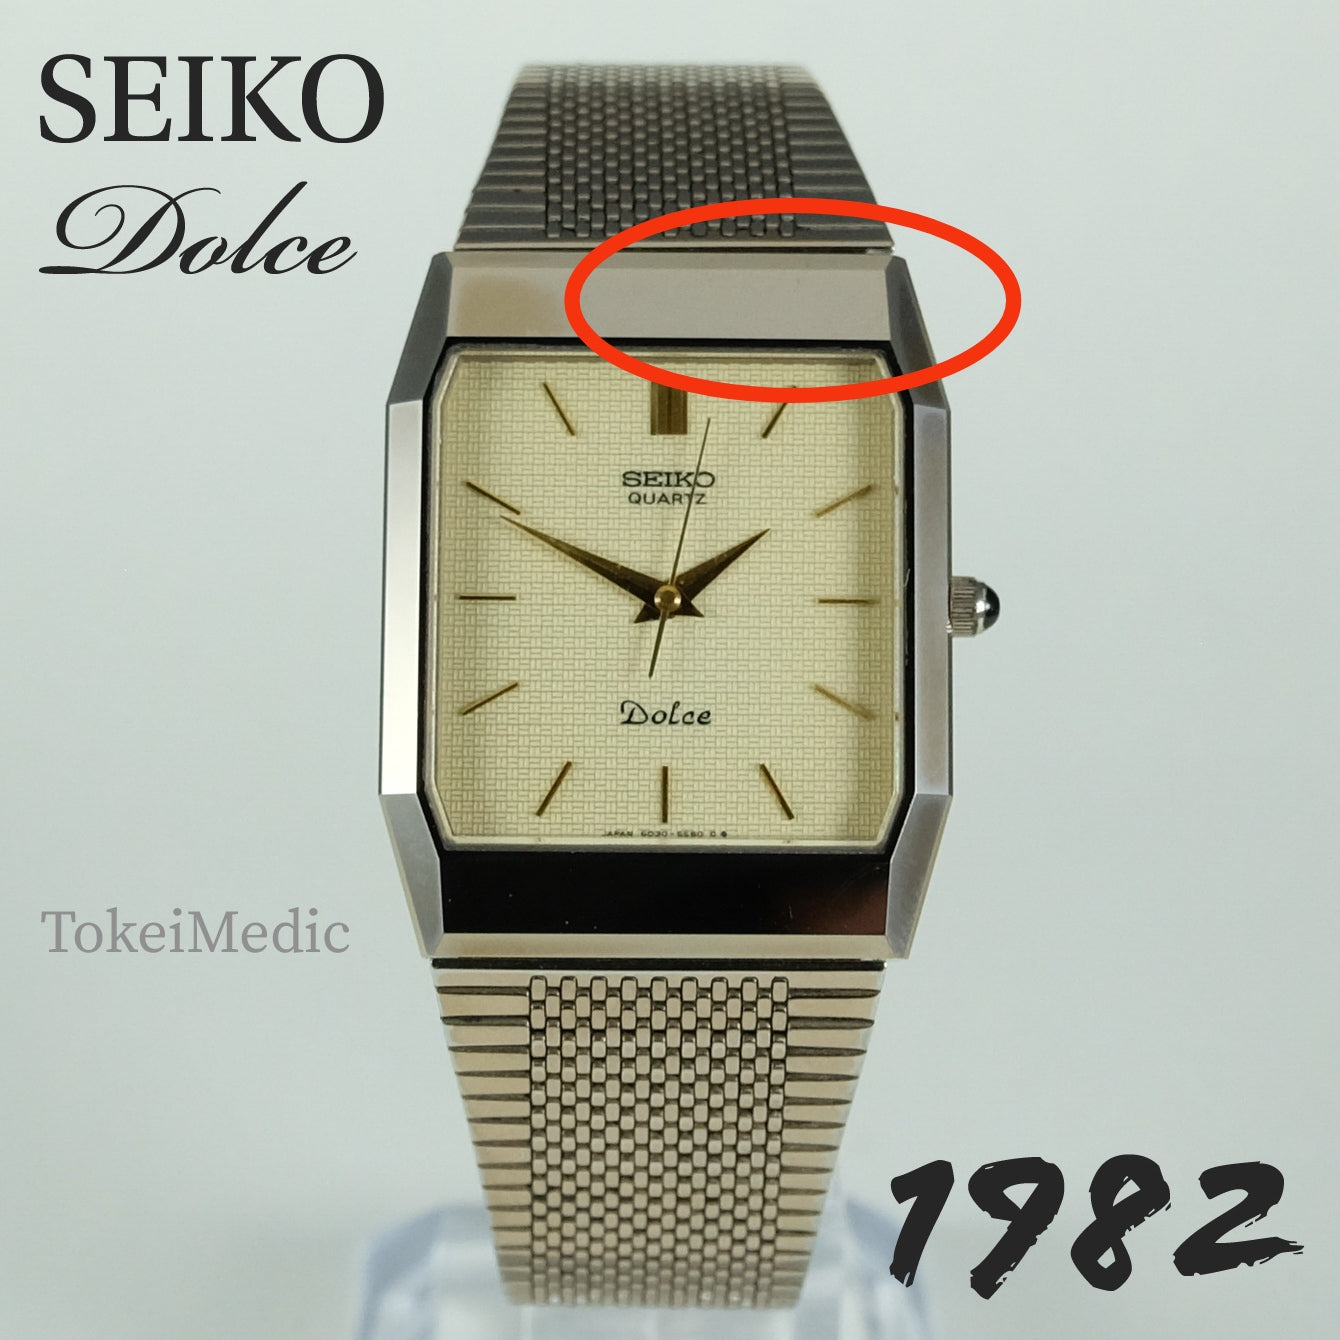 1982 Seiko Dolce 6030-5530